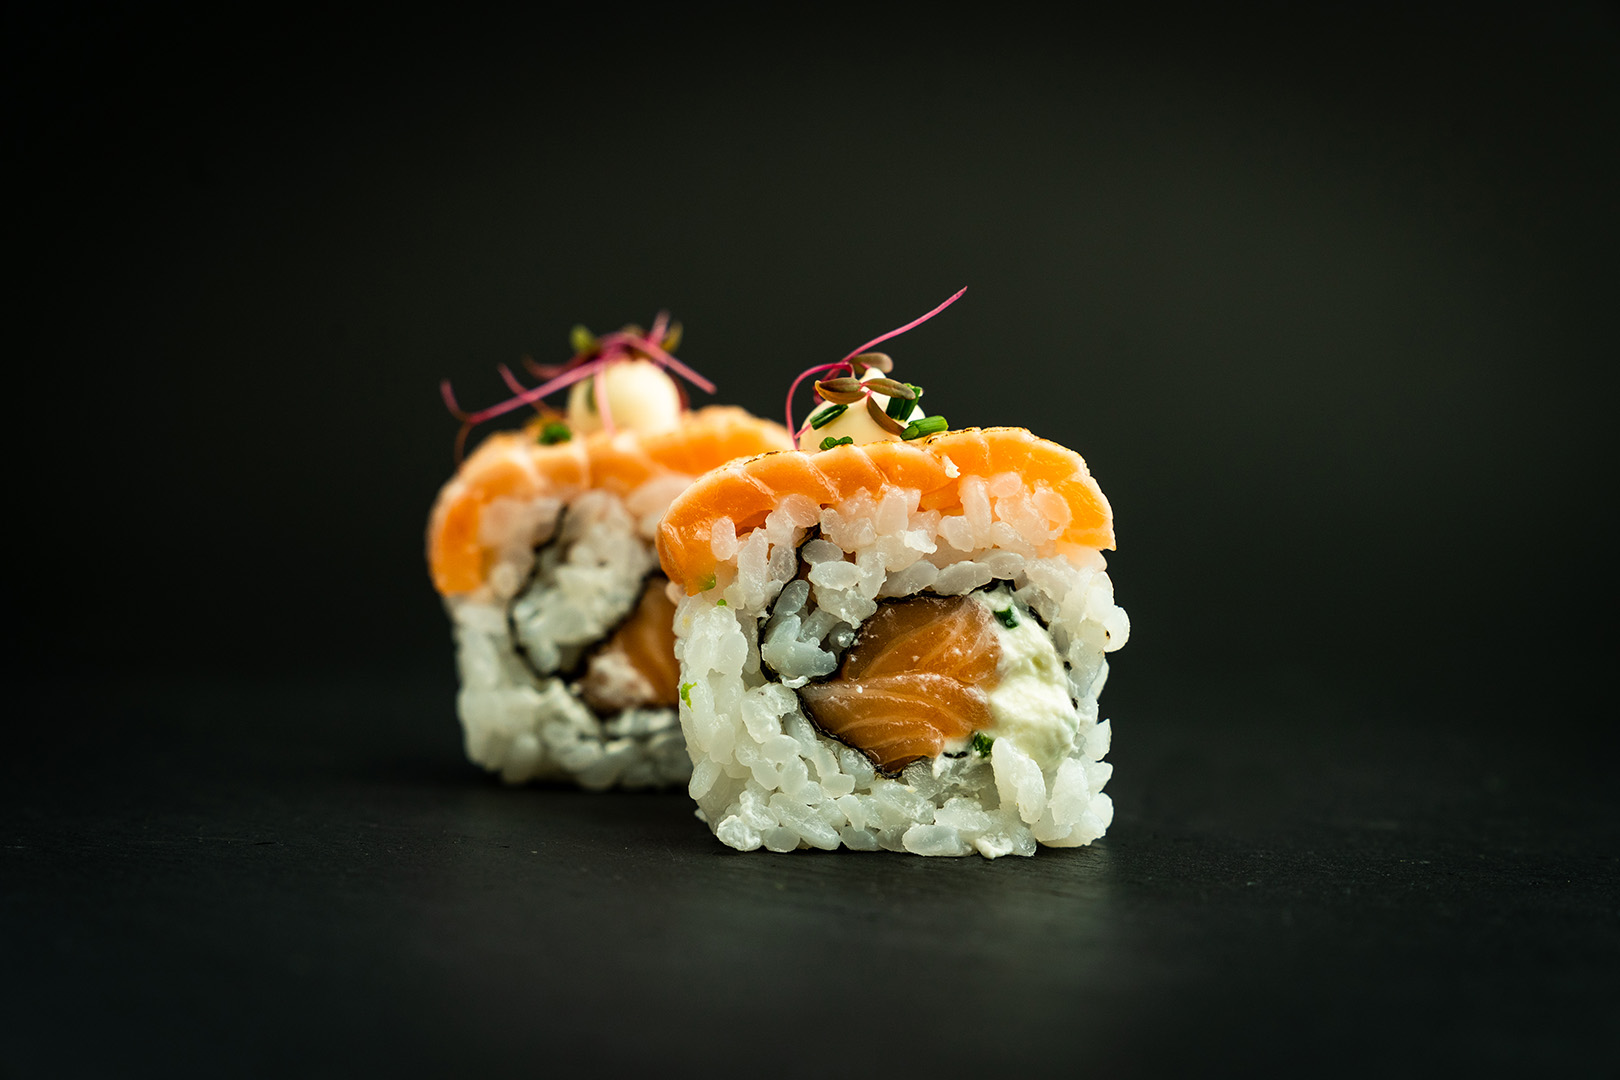 Sushi <3